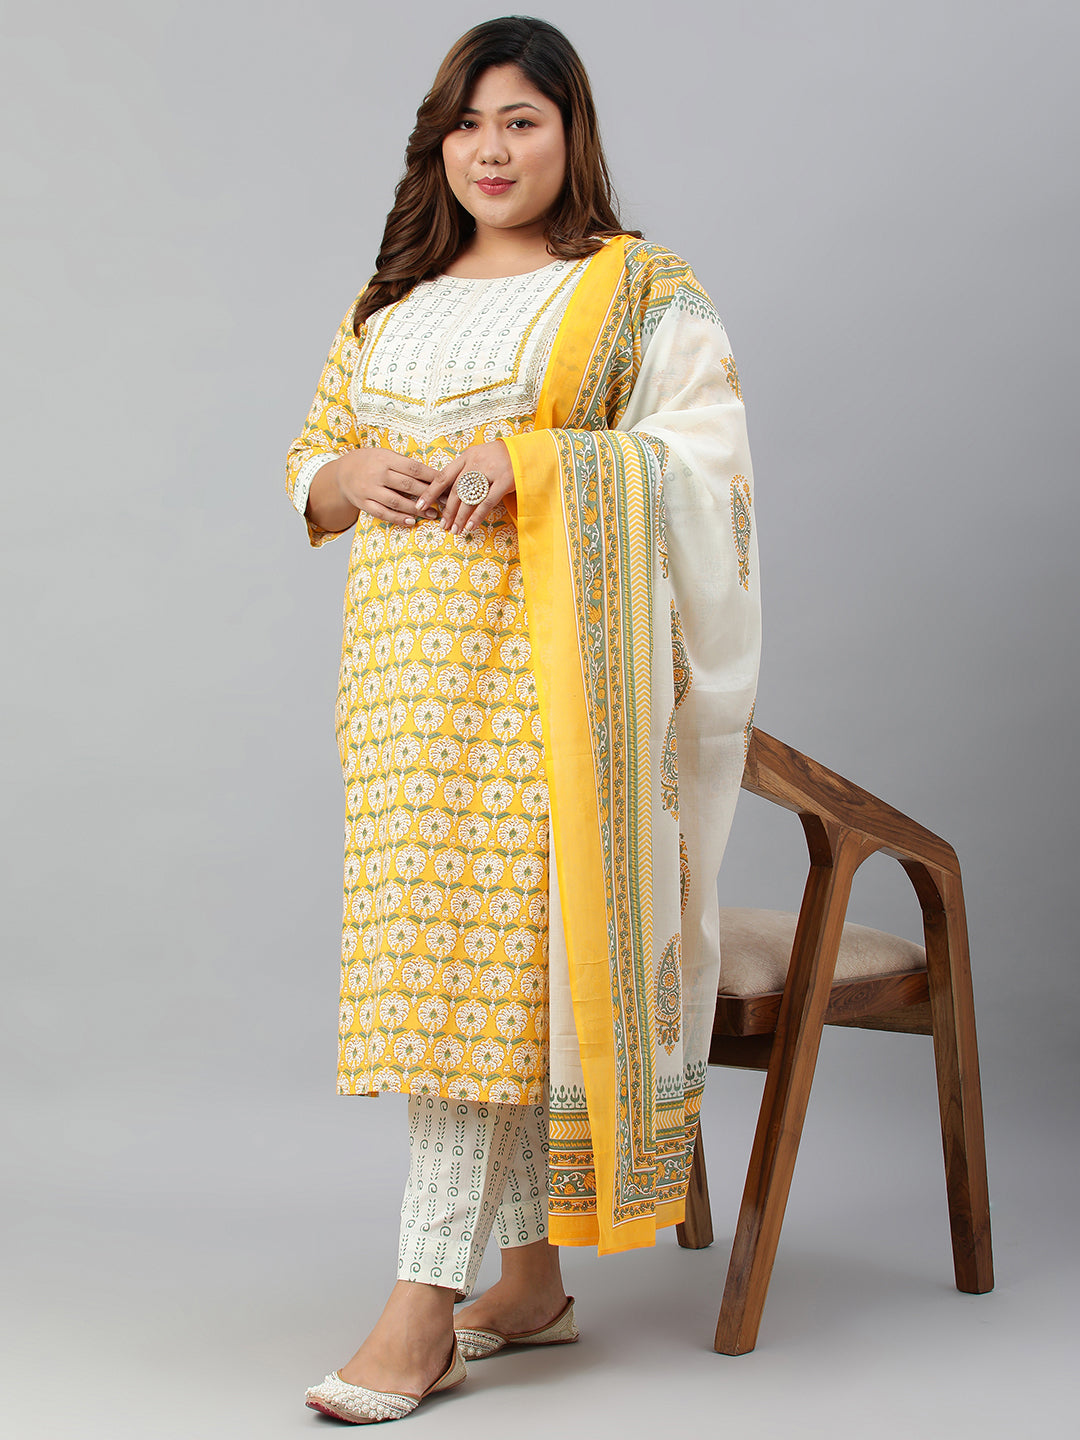 Janasya XL LOVE by Janasya Women's Plus Size Yellow Cotton Kurta With Pants and Dupatta - Distacart